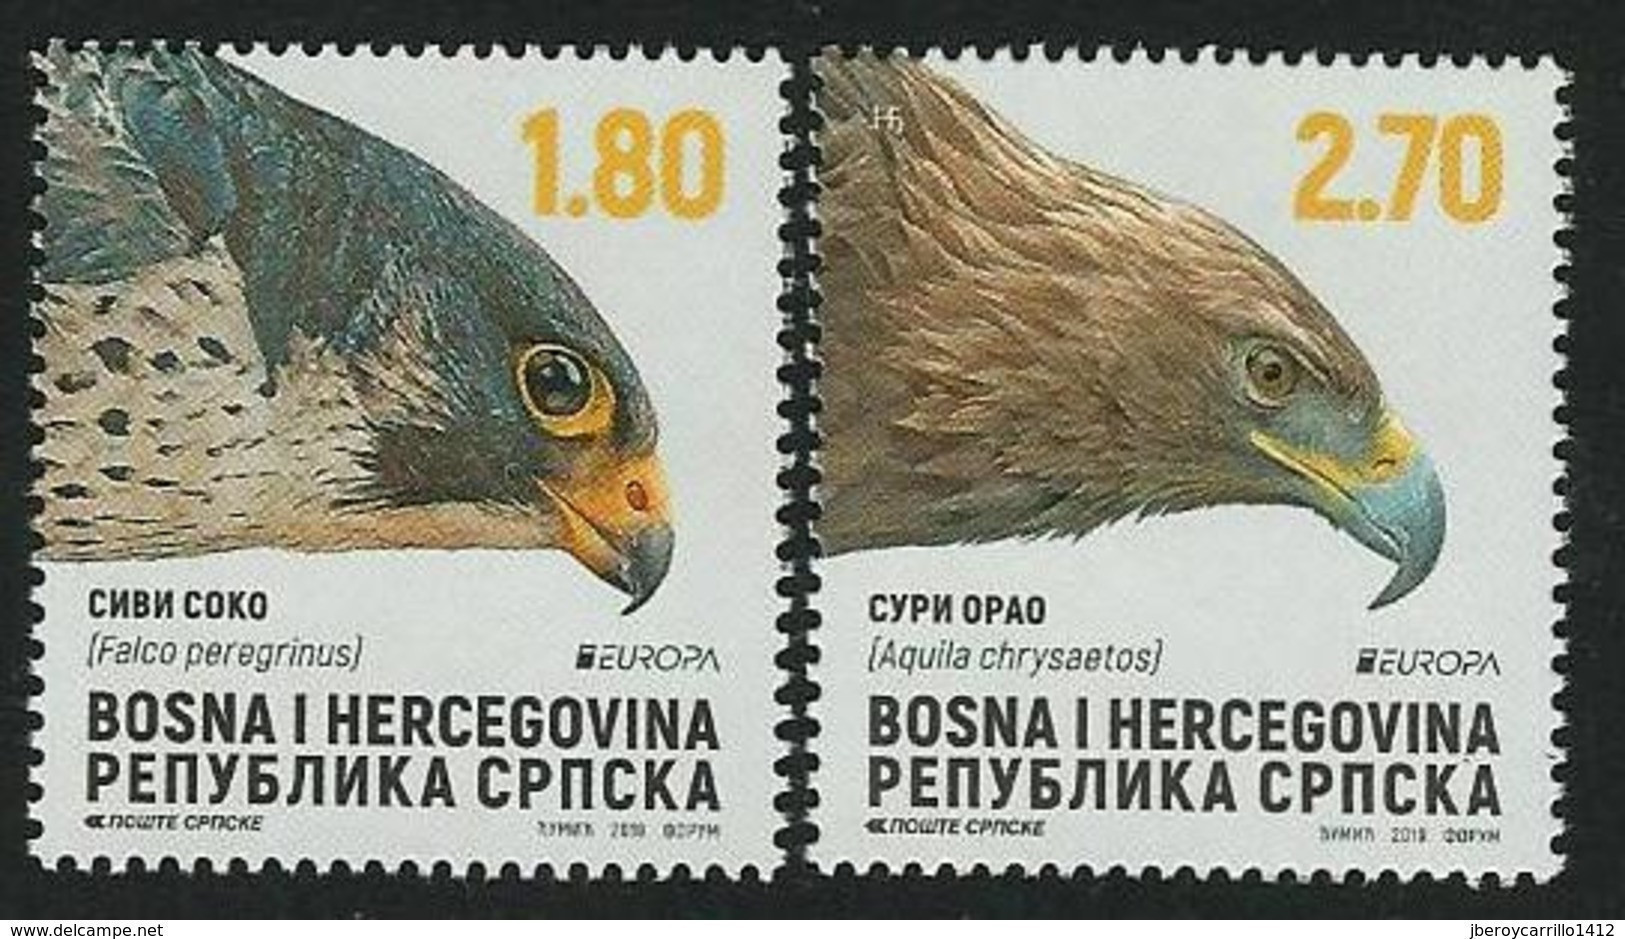 BOSNIA HERZEGOVINA SERBIA /BOSNIEN SERBIEN / BOSNIE -EUROPA 2019 -NATIONAL BIRDS.- "AVES -BIRDS -VÖGEL-OISEAUX"- SERIE N - 2019